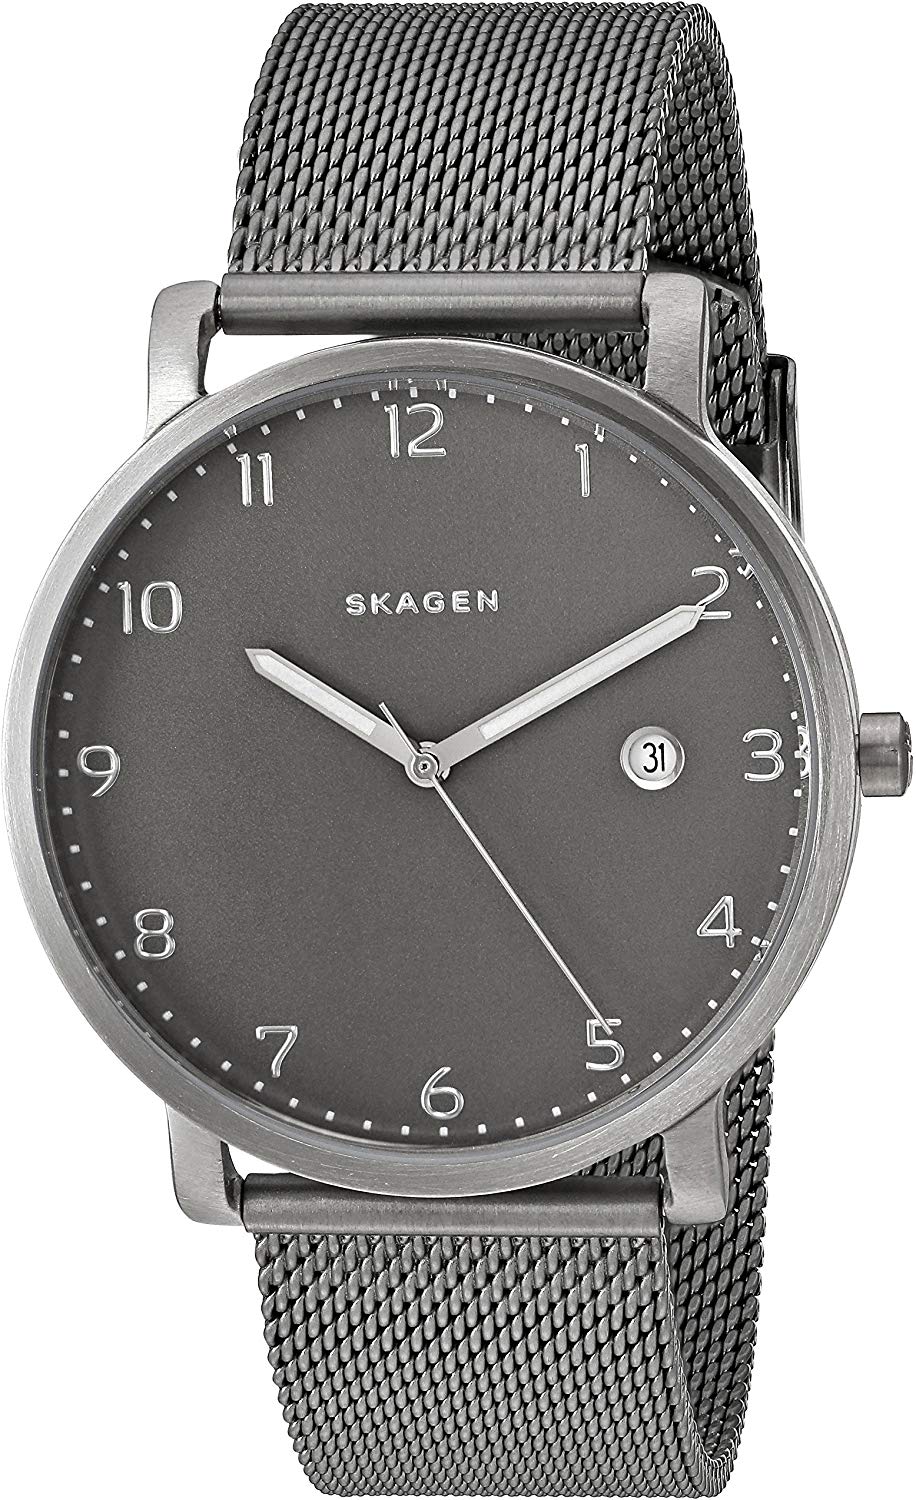 ساعت مچی مردانه اسکاگن مدل SKW6307